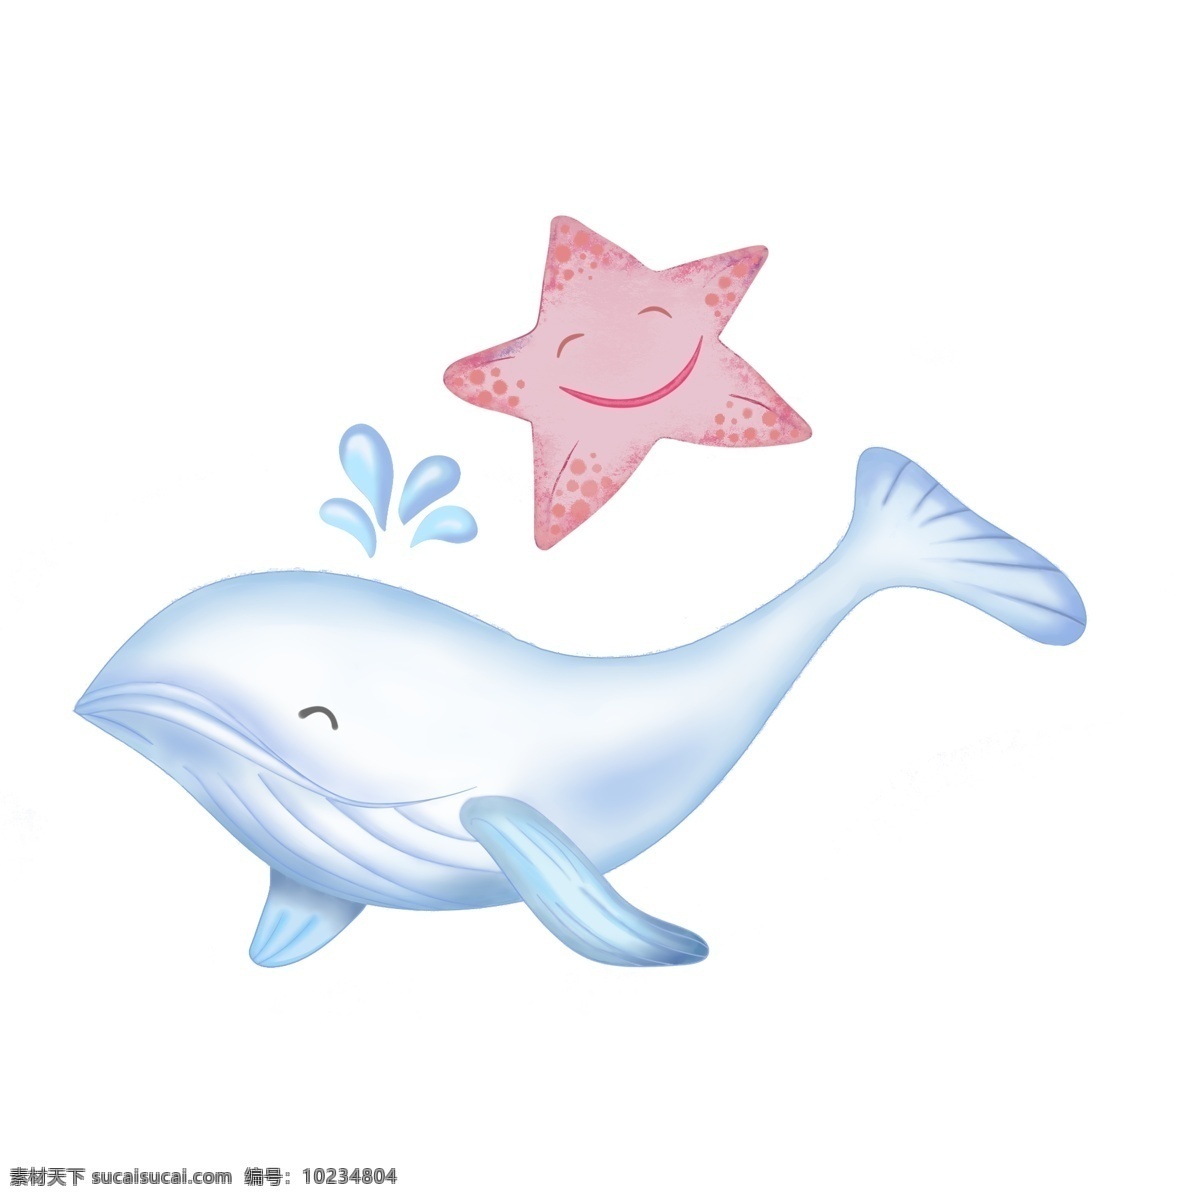 海星 海豚 动物 海底 世界 商用 蓝色 水花 卡通